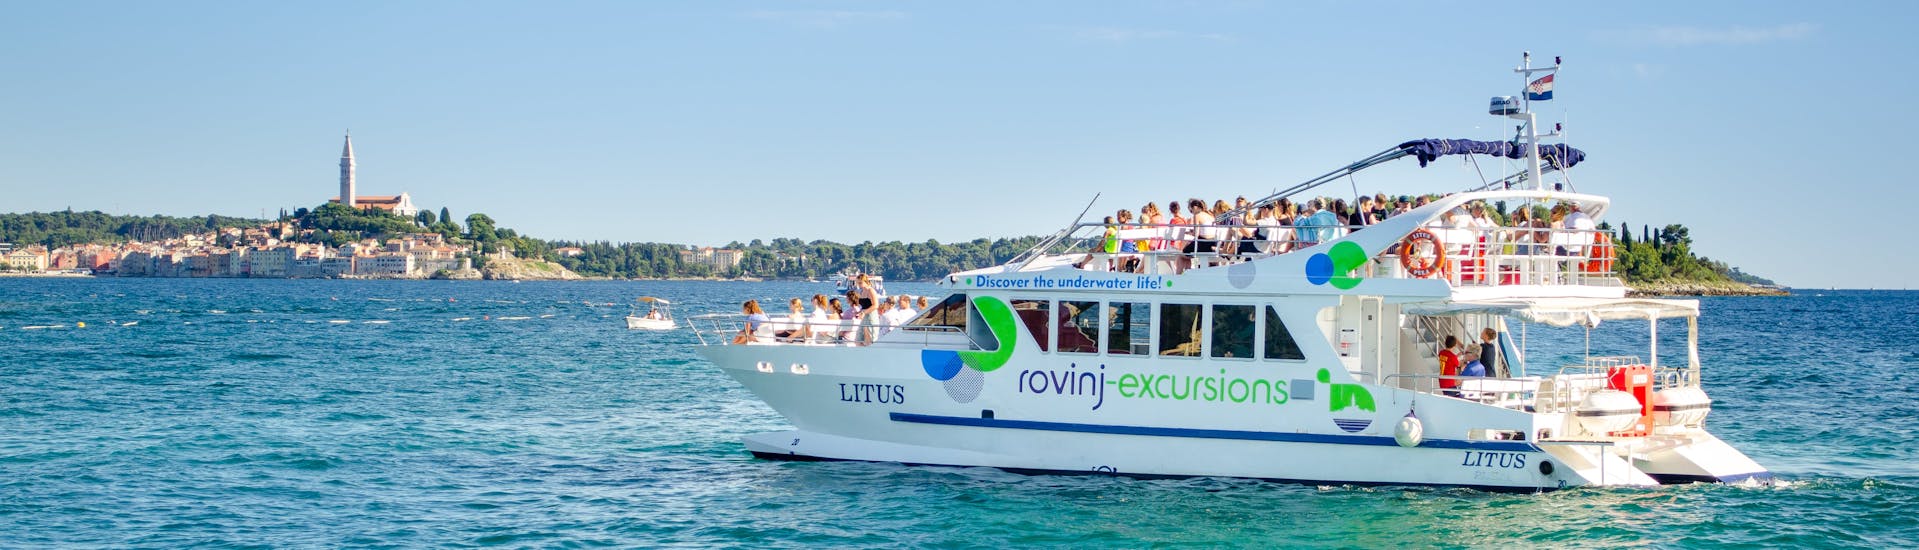 La barca LITUS solca le acque cristalline dell'Istria durante la Gita in catamarano al tramonto a Rovigno con avvistamento delfini con Rovinj Excursions.